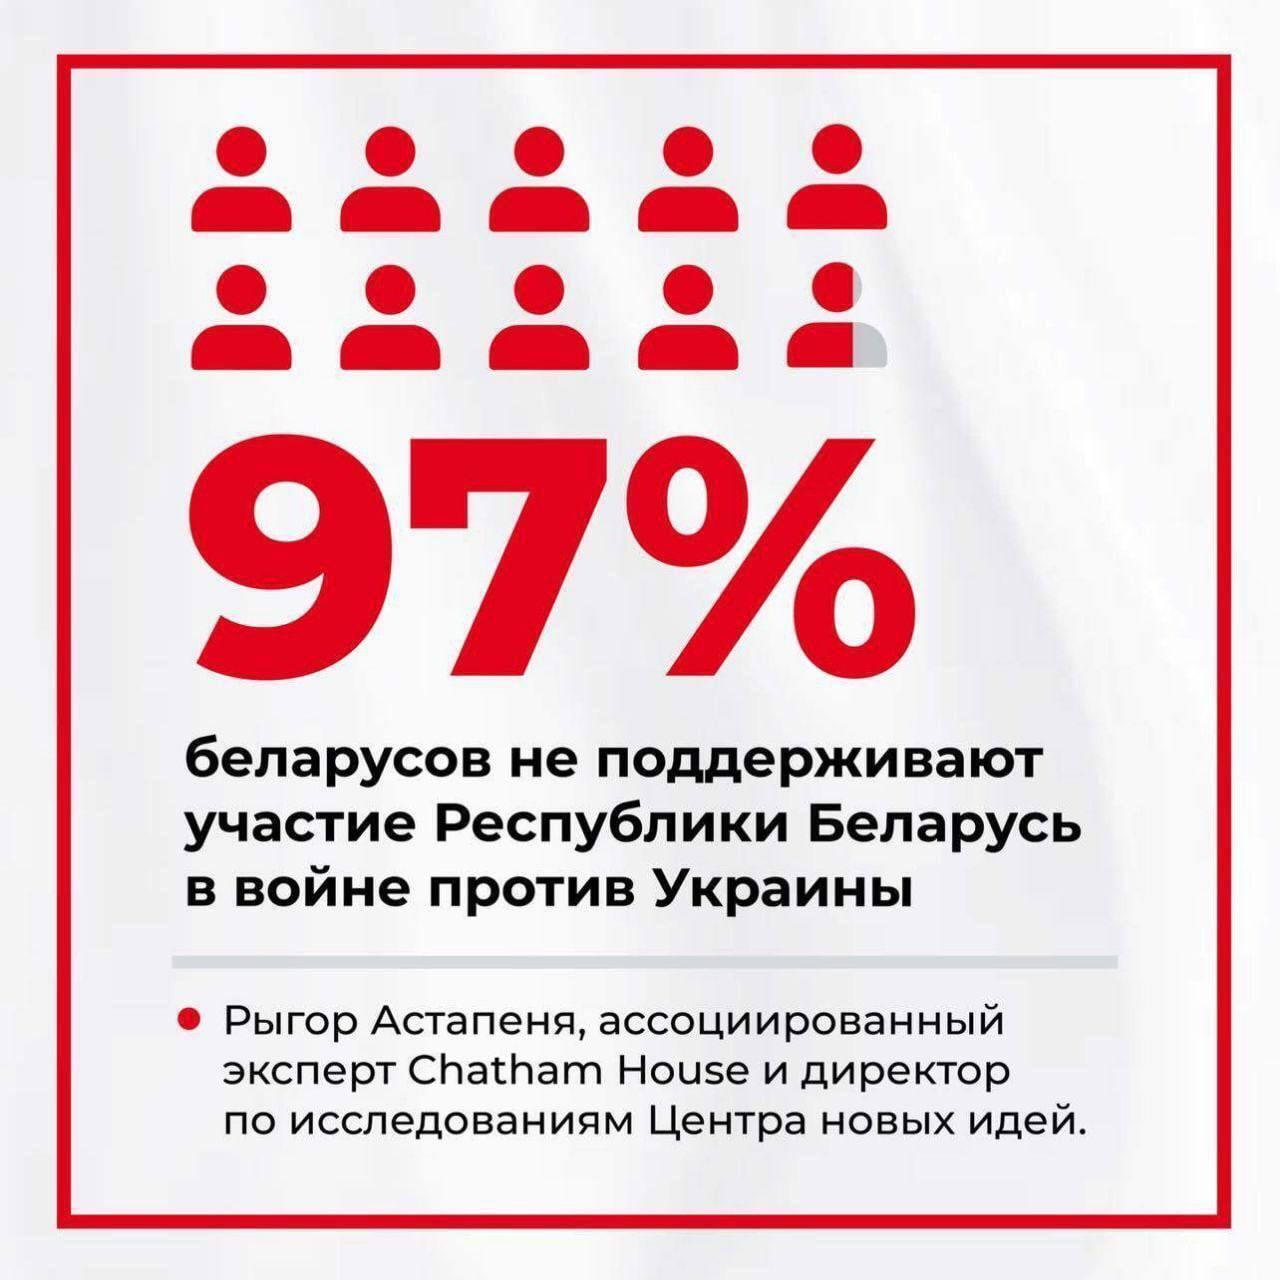 По данным Рыгора Астапени войну с Украиной по состоянию на 11 марта поддерживают всего 3% беларусов